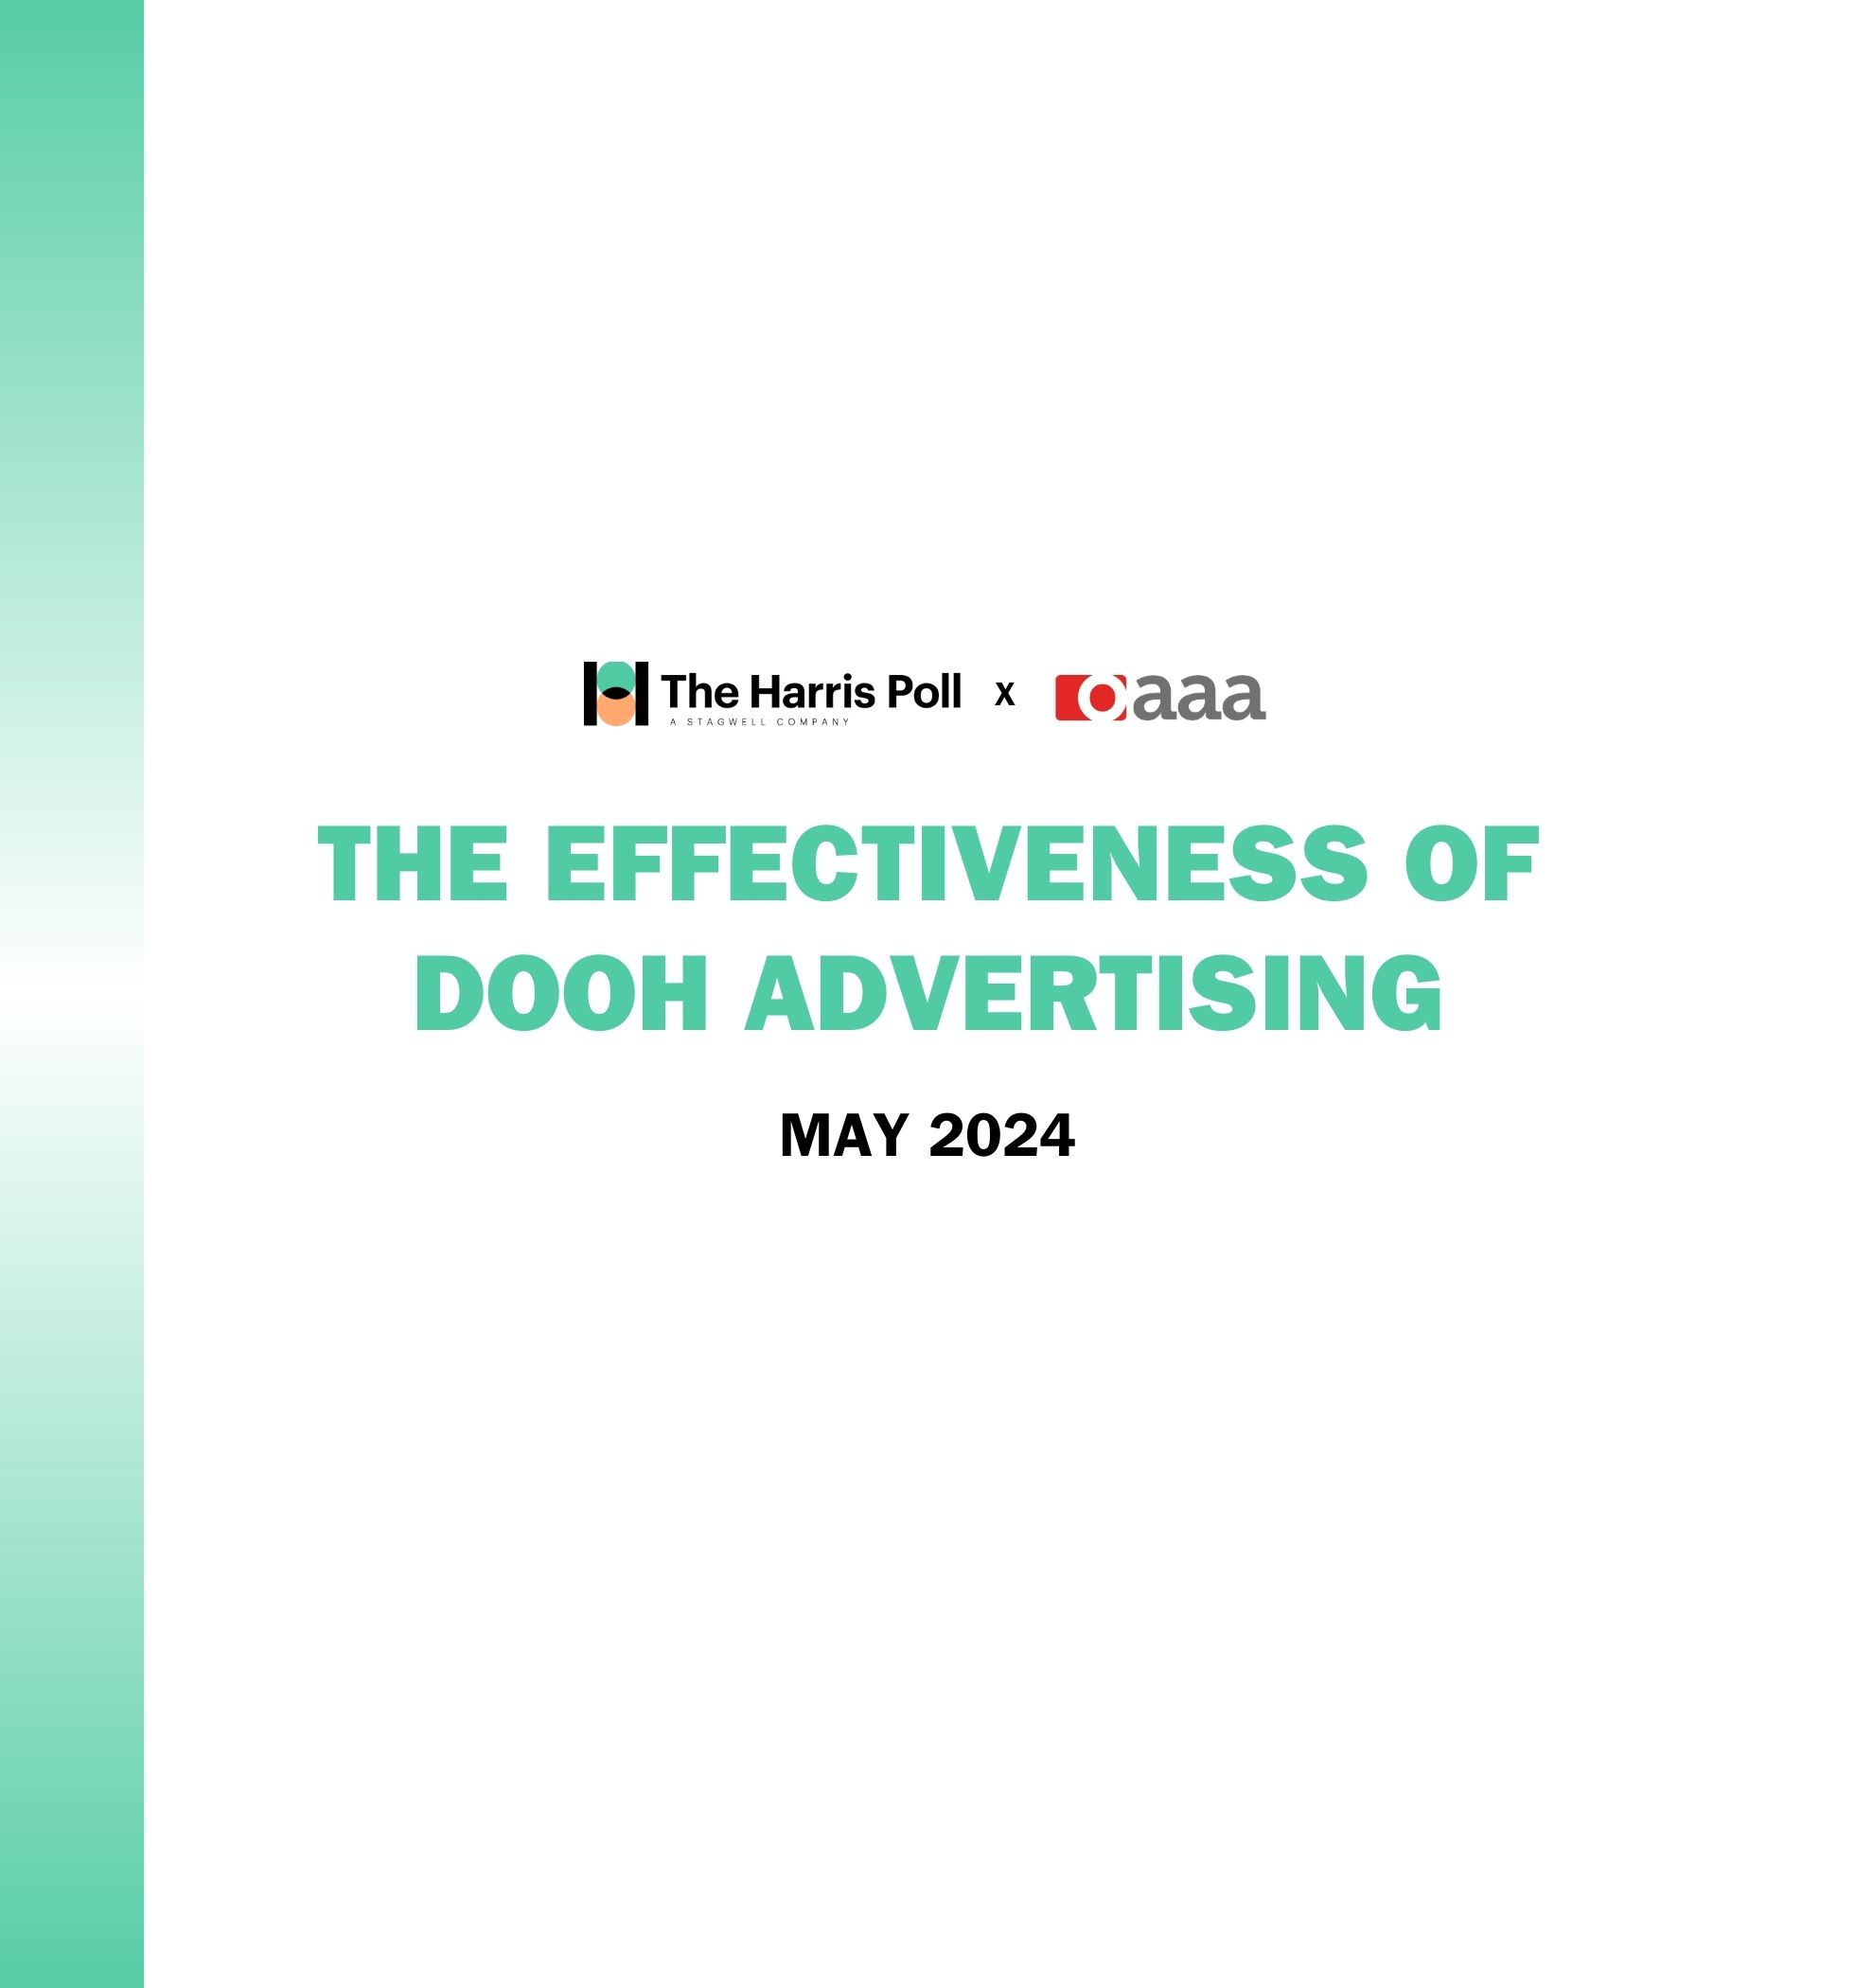 The Effectiveness of DOOH Advertising